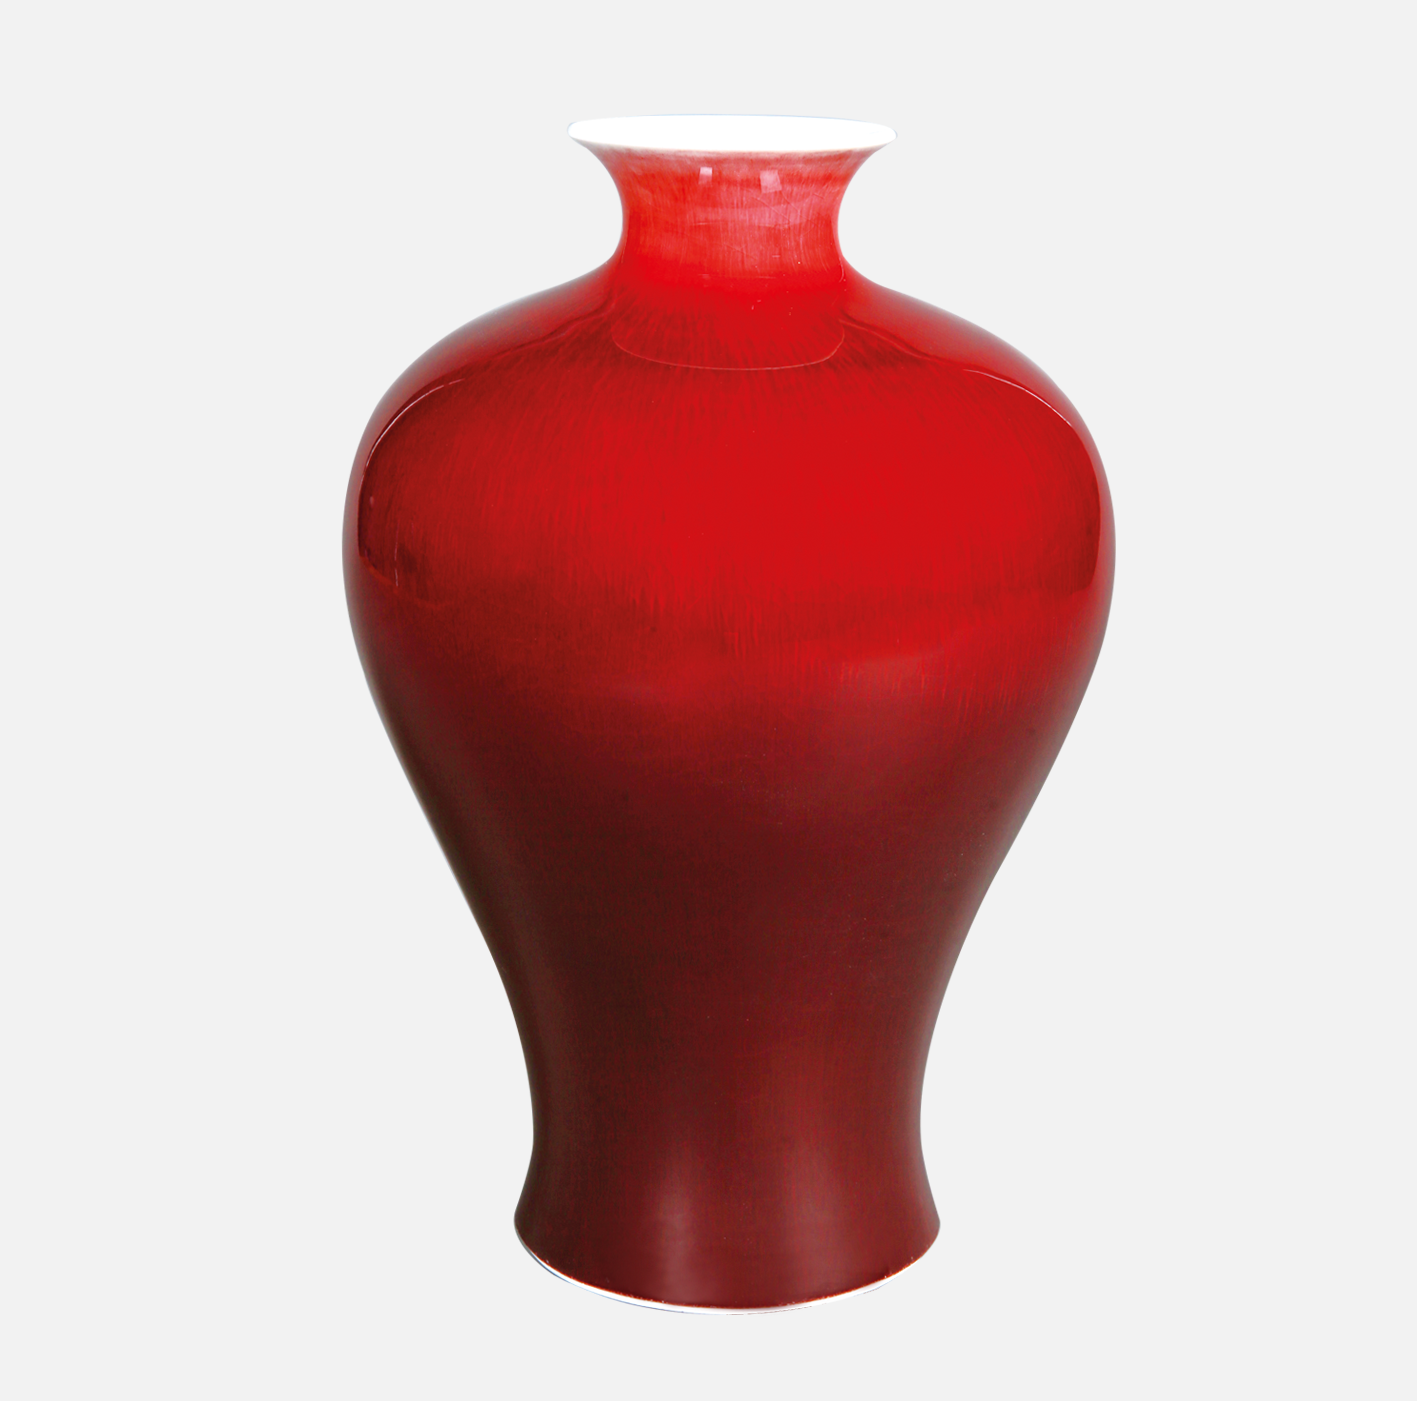 100件郎窑红釉梅瓶